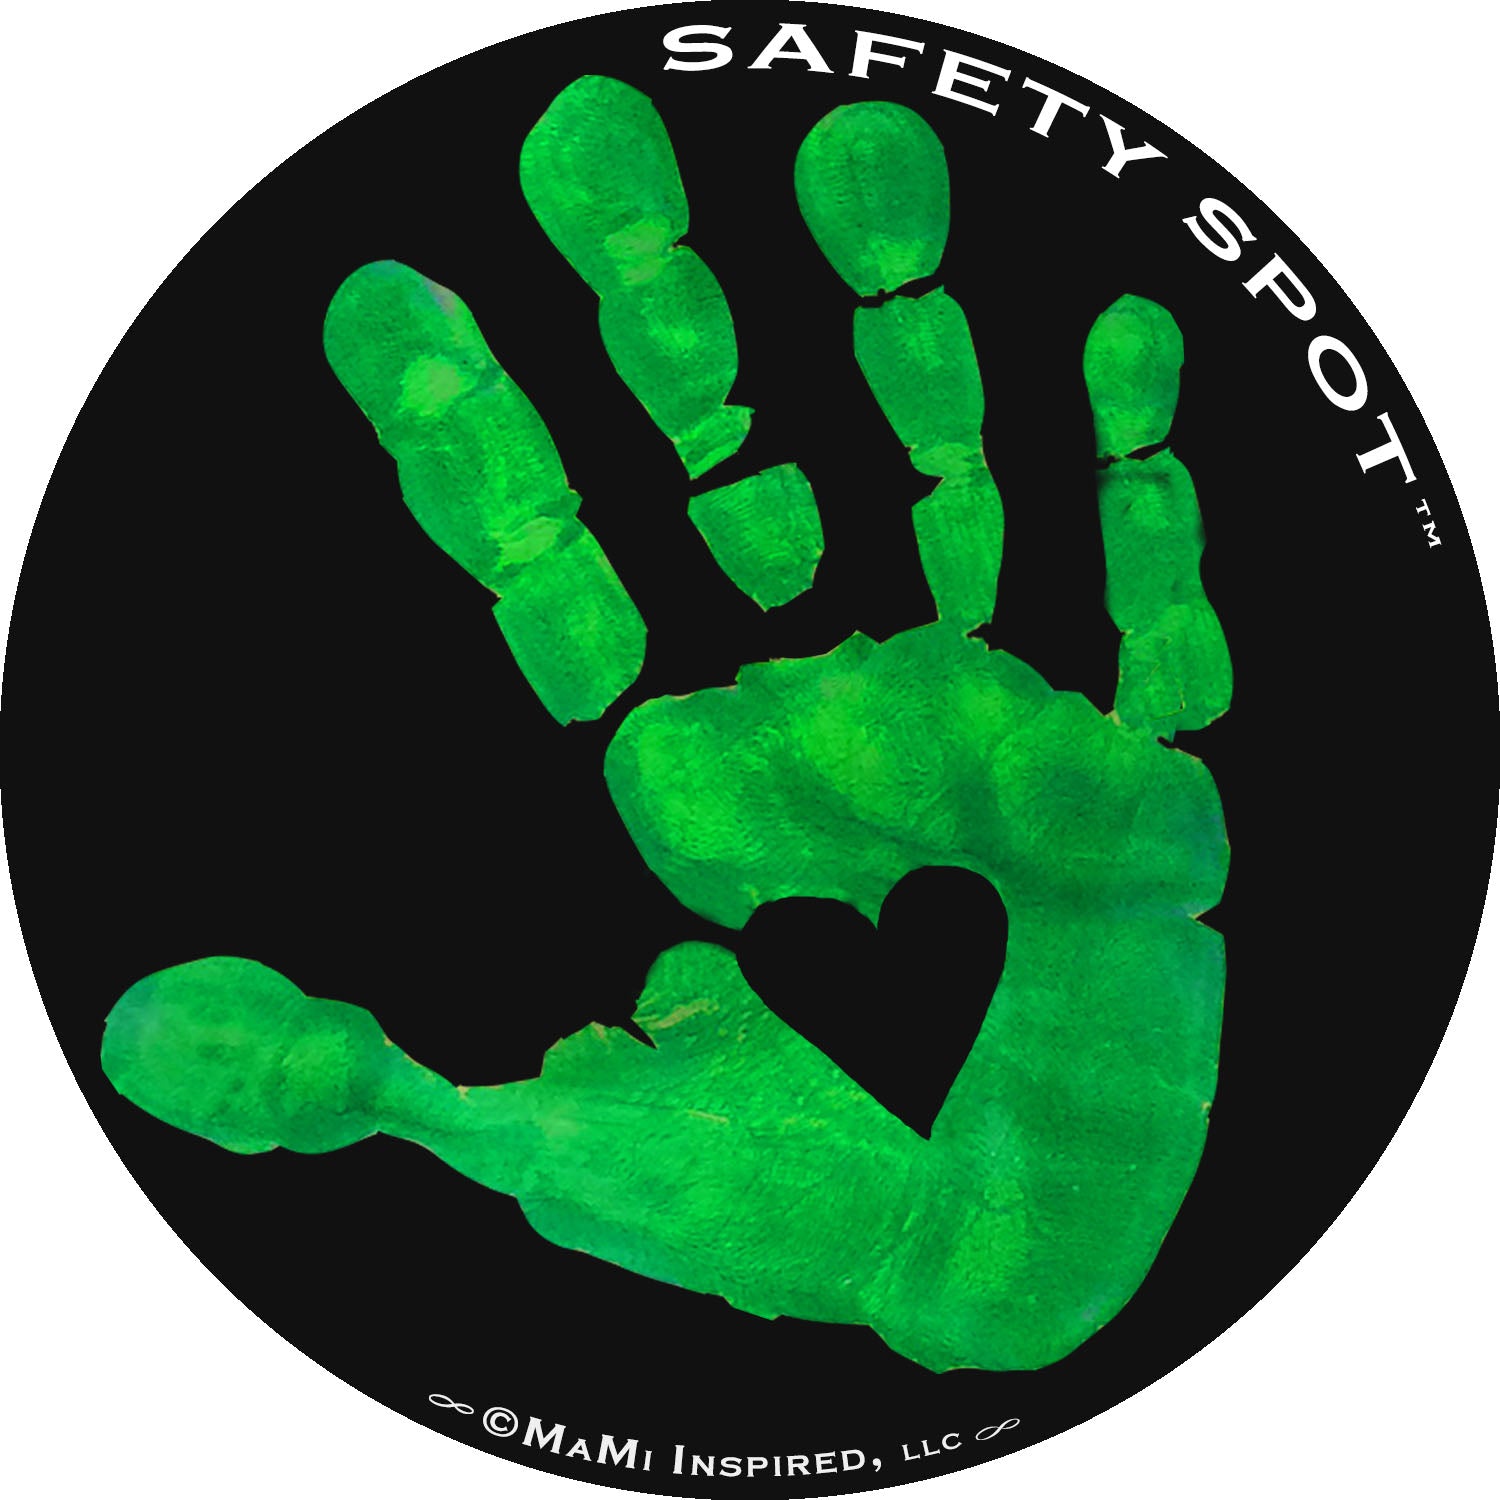 Safety Spot ™ MAGNET - Kids Handprint for Car Parking Lot Safety - BLA